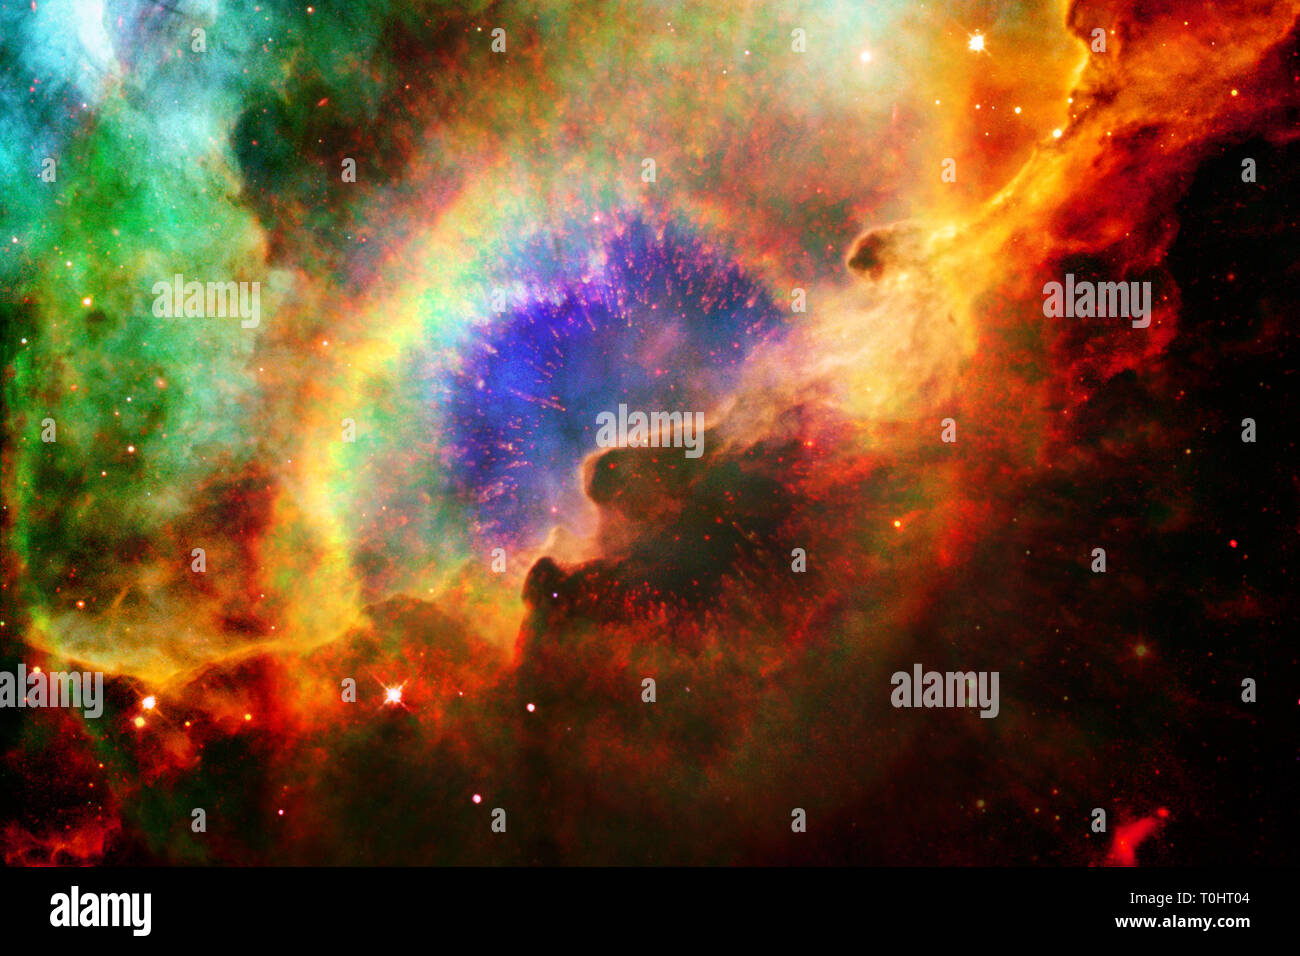 Nebel, Galaxien und Sterne in einer schönen Komposition. Deep Space Art Elemente dieses Bild von der NASA eingerichtet. Stockfoto